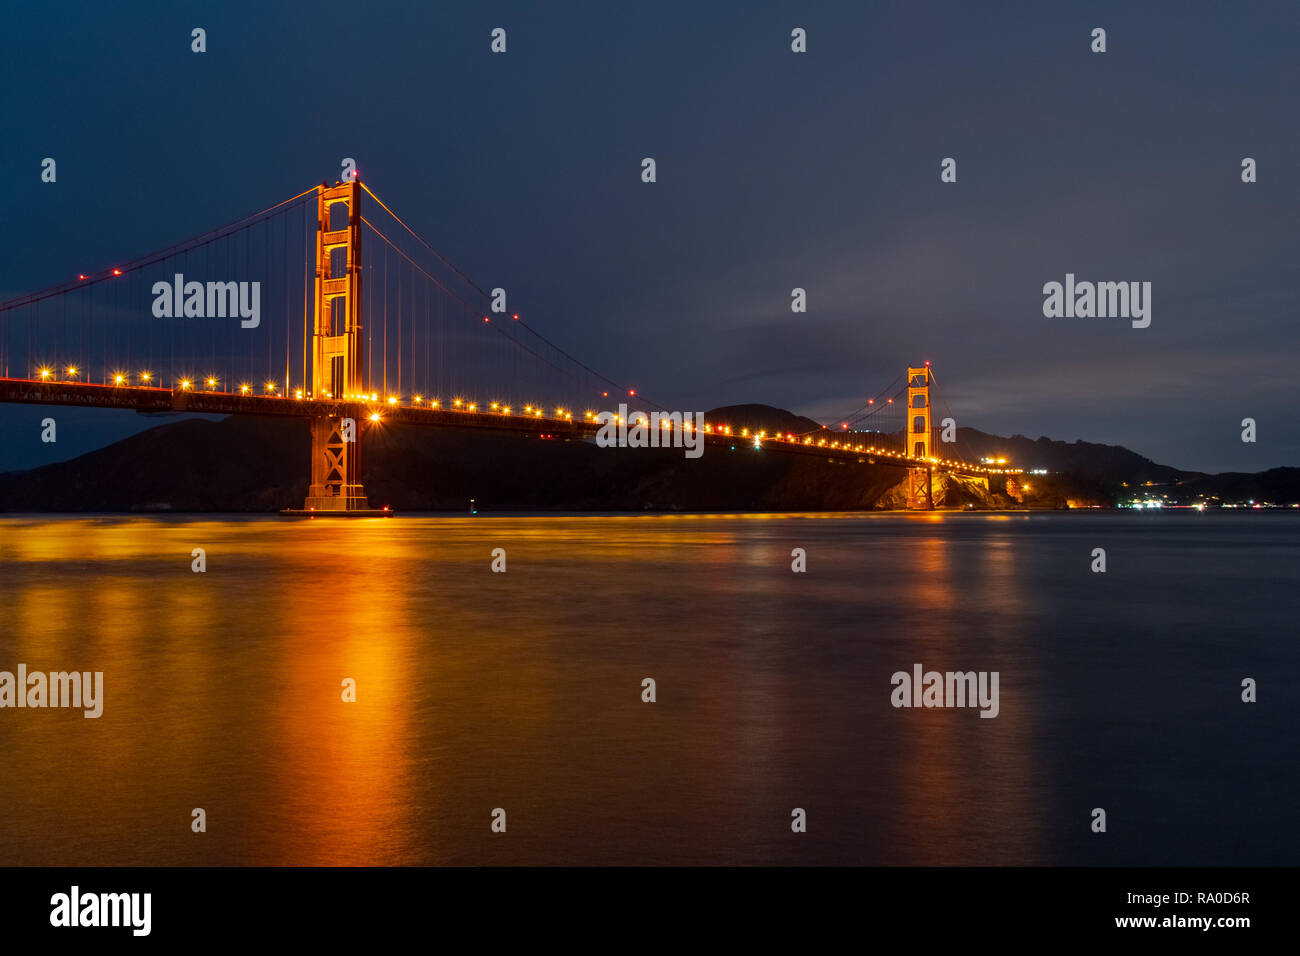 Vue nocturne de Golden Gate Bridge reflète dans la surface de l'eau trouble de la baie de San Francisco, Californie Banque D'Images